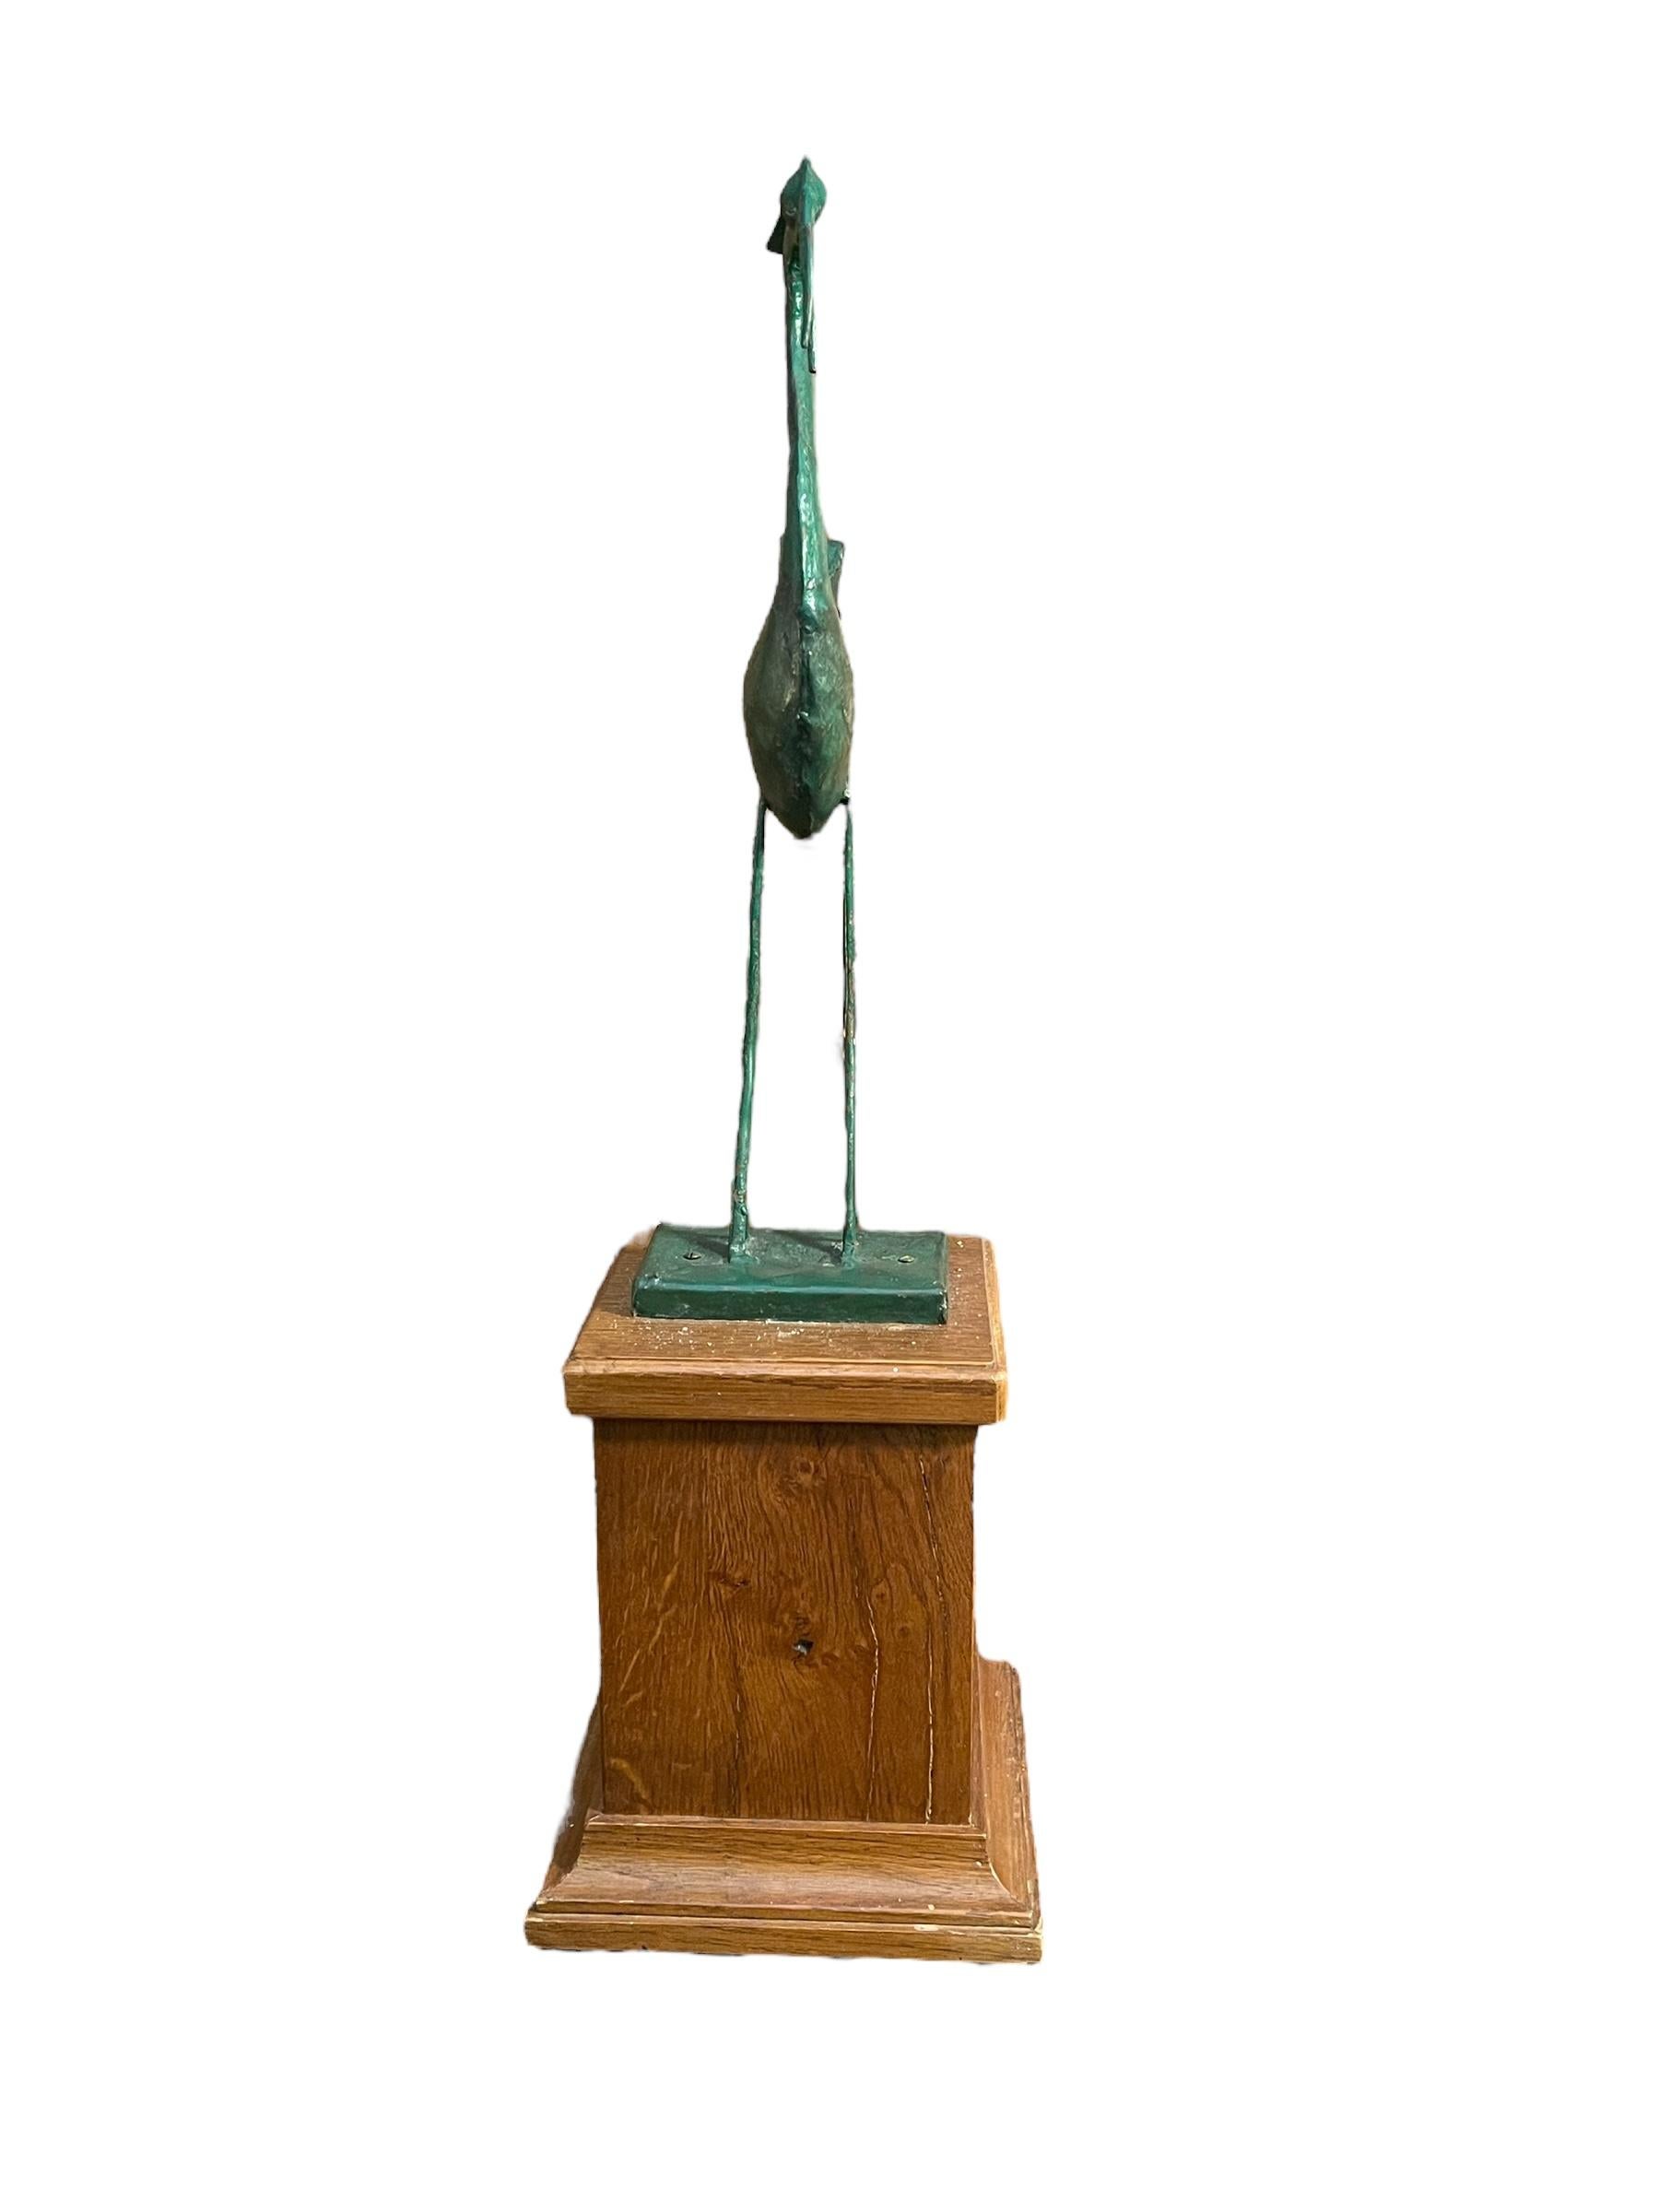 Sculpture en métal, héron, 20e siècle
Sculpture représentant un oiseau, le héron, en métal laqué vert, sur un socle en bois.
Bon état, comme indiqué sur la photo
Dimensions maximales sans socle : 30x14 cm, hauteur 49 cm
Dimensions maximales avec